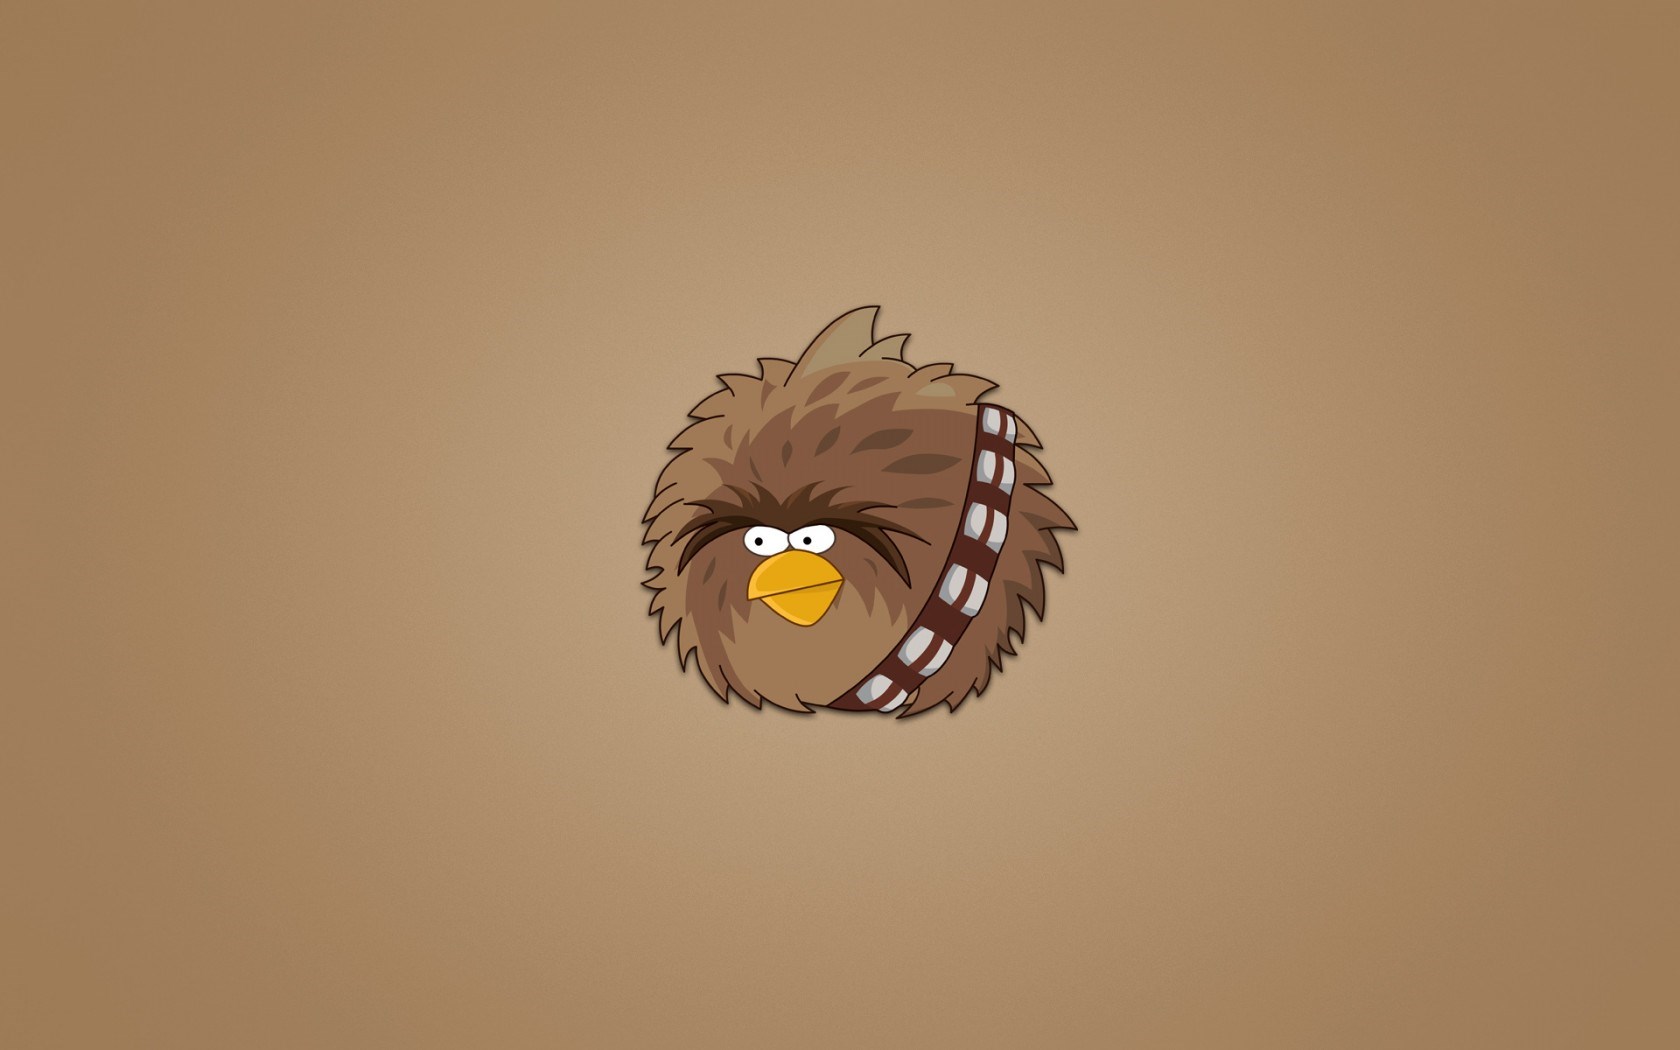 Descargar fondos de escritorio de Angry Birds Star Wars HD